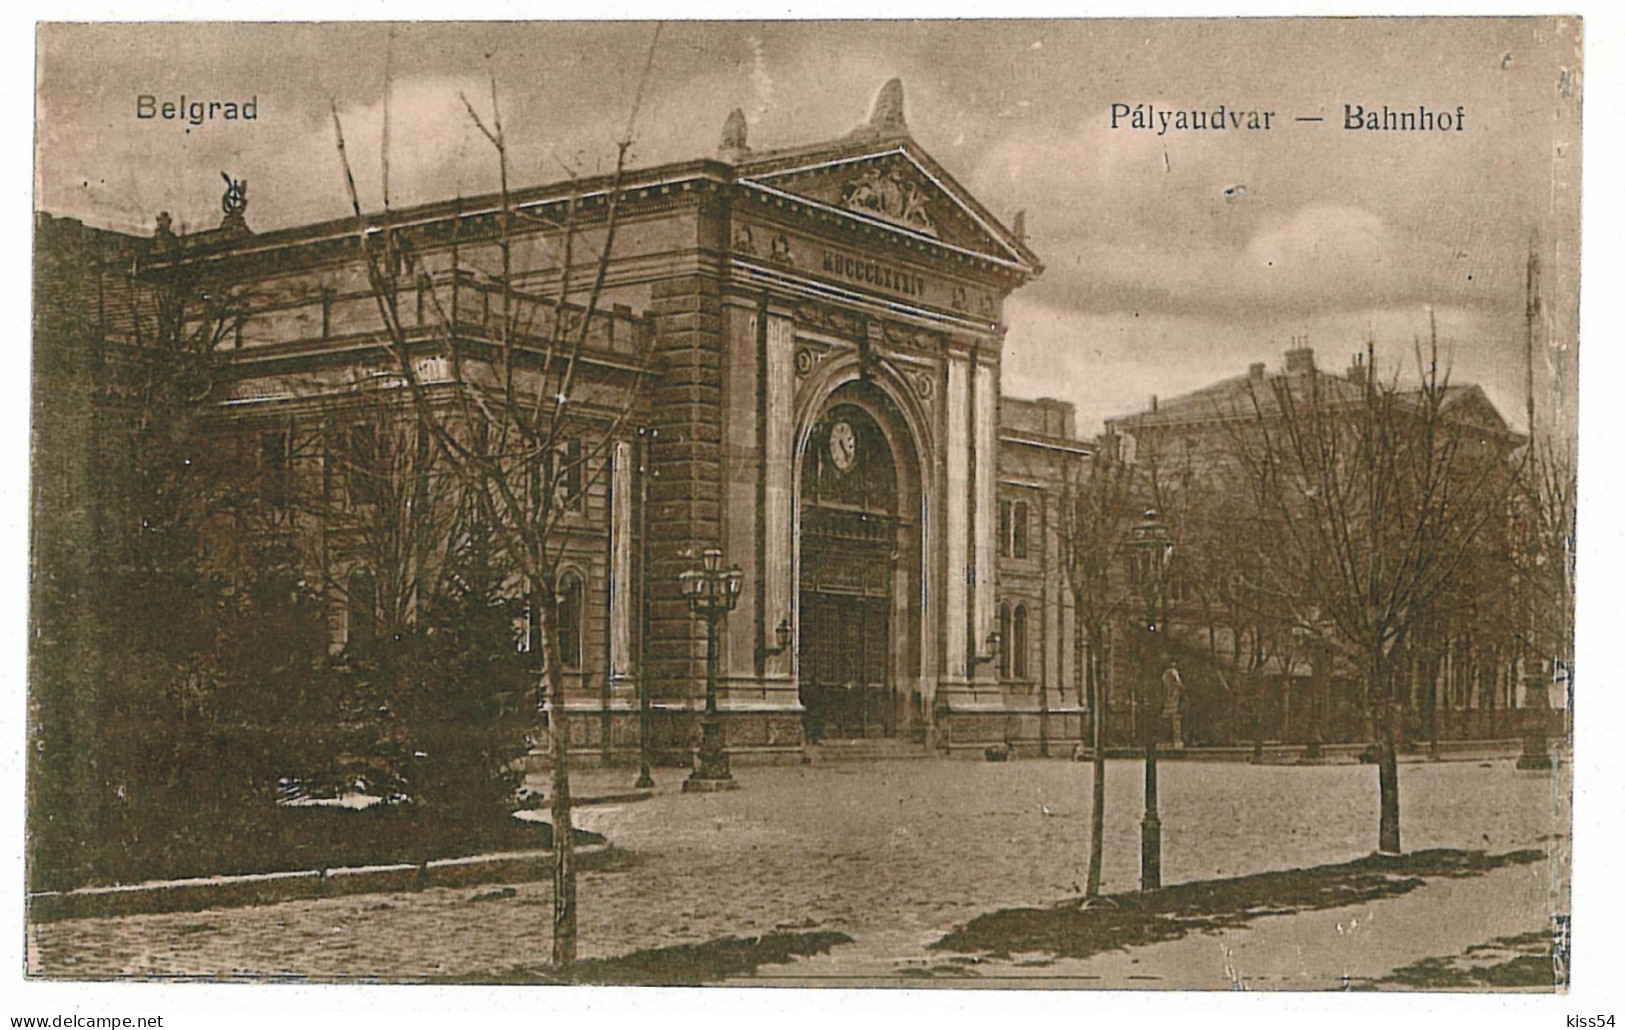 SER 5 - 5615 BELGRAD, Serbia. Railway Station - Old Postcard - Unused - Serbia